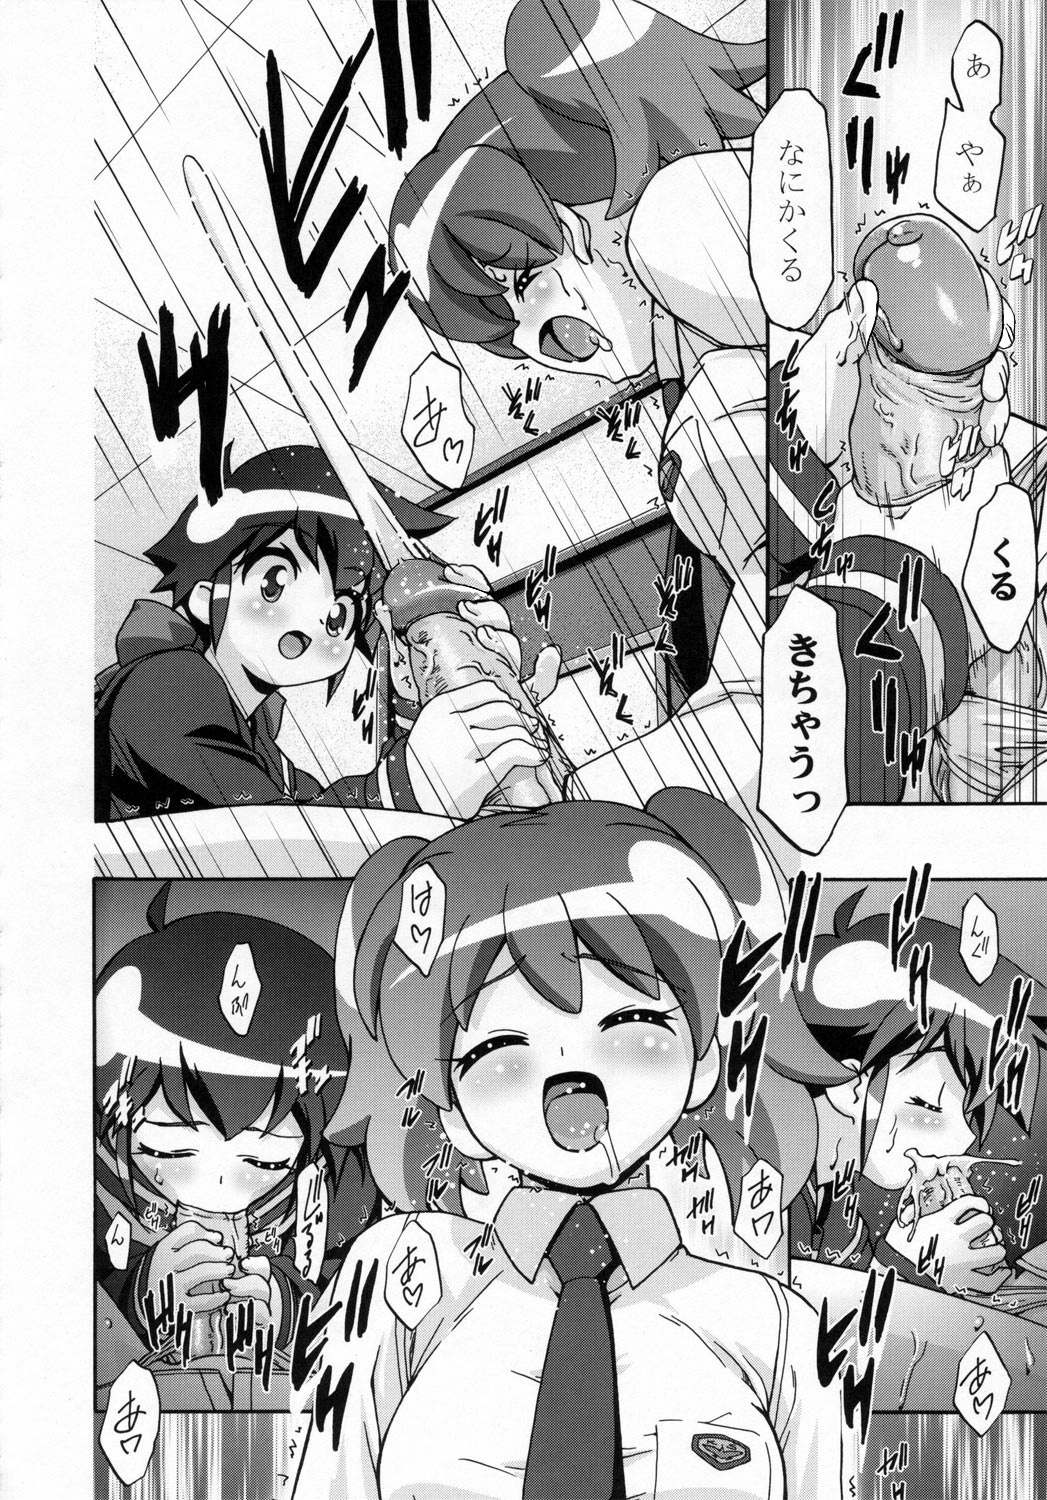 (SC31) [Gambler Club (Kousaka Jun)] Natsu Yuki - Summer Snow (Keroro Gunsou) page 7 full